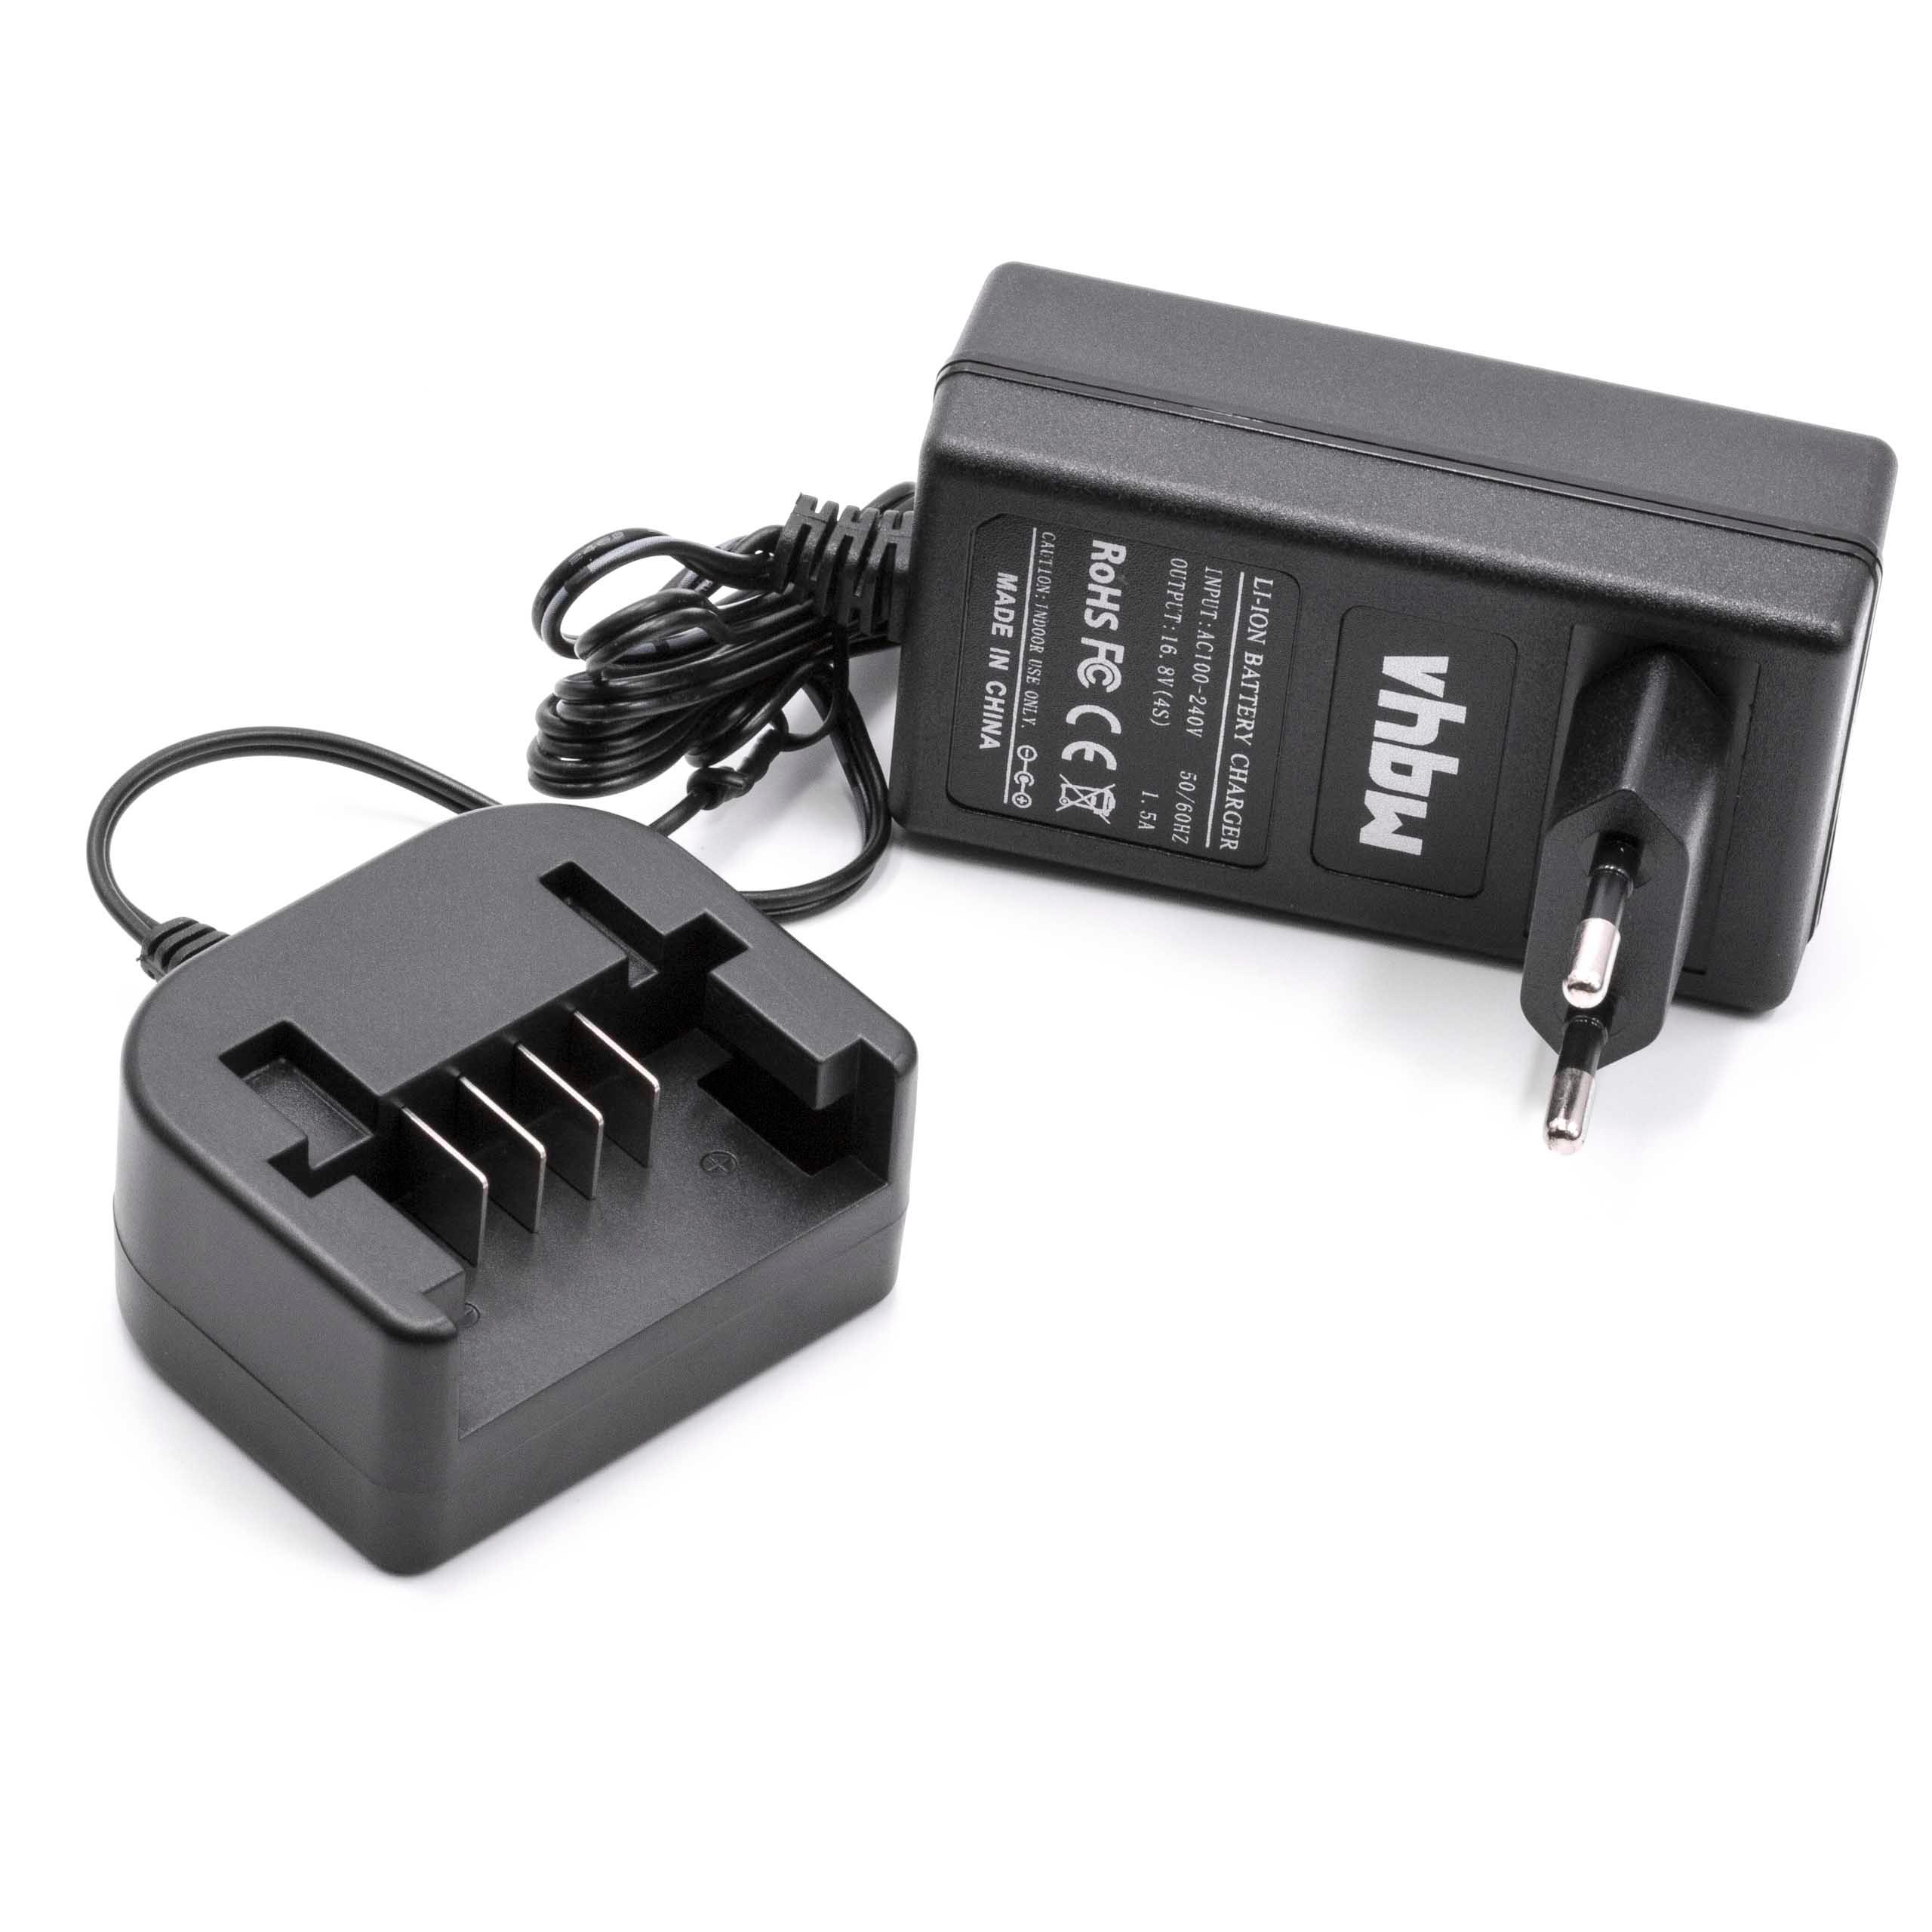 Charger suitable for ASL146 Black & Decker, ASL146 Power Tool Batteries etc. Li-Ion 14.4 V